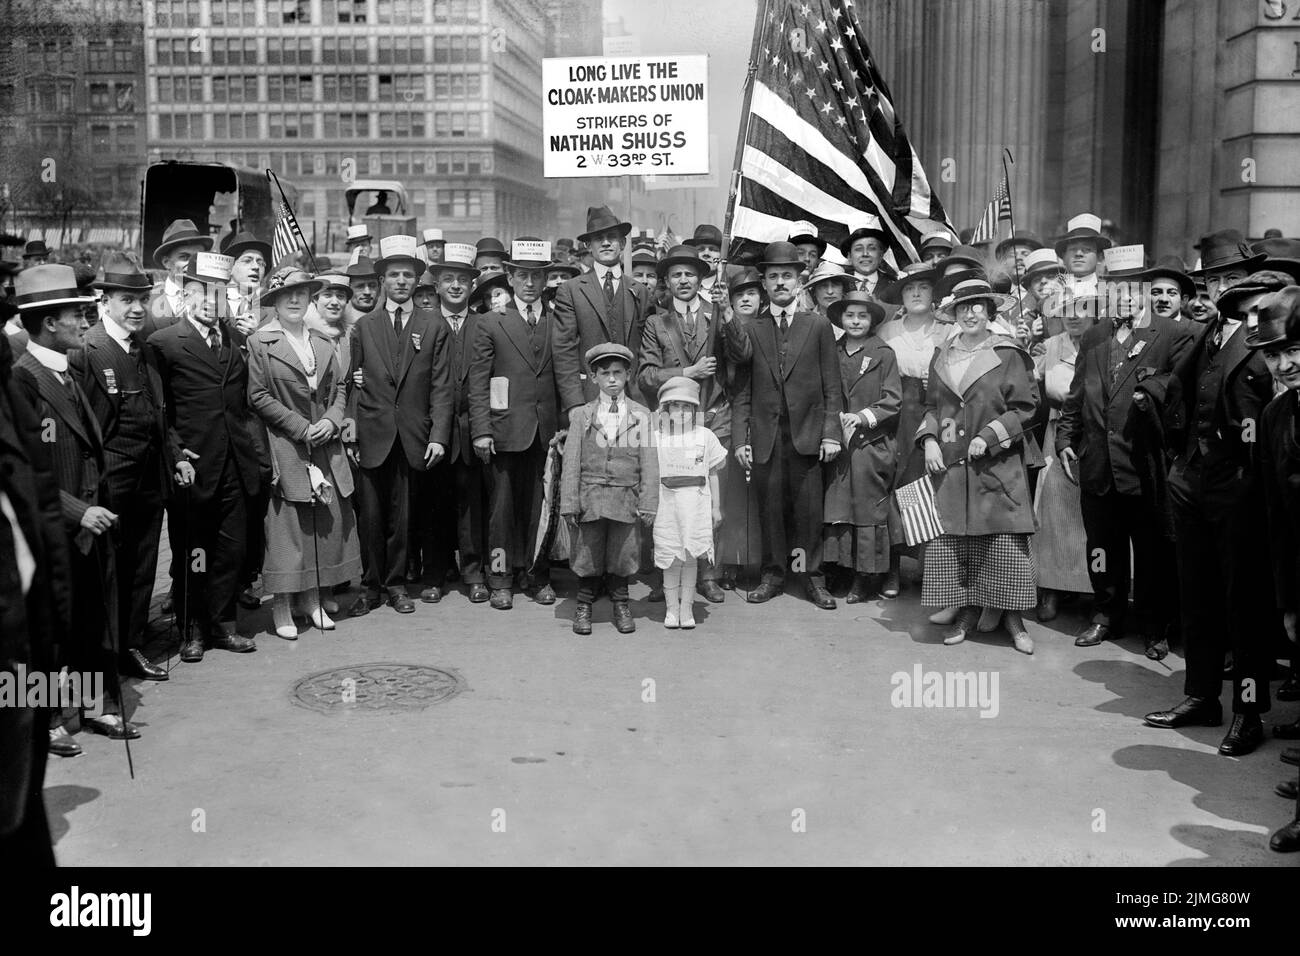 Streikende Bekleidungsarbeiter, Tarnhersteller Union, Union Square, New York City, New York, USA, Bain Nachrichtendienst, 1916 Stockfoto